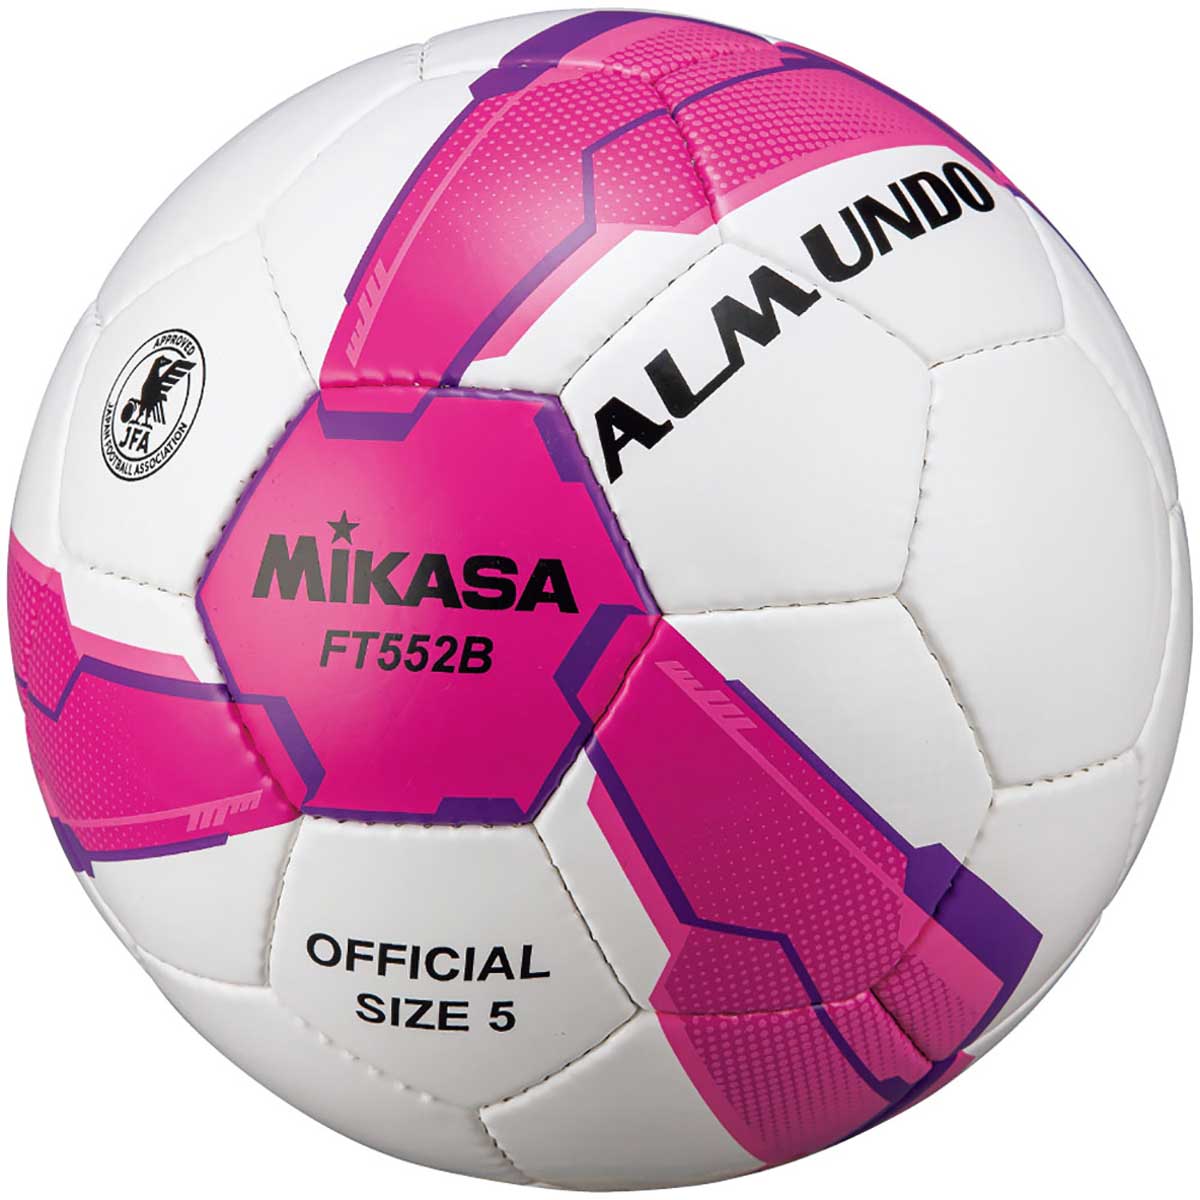 品番 MG FT552BPV ブランド MIKASA(ミカサ) 詳細 日本サッカー協会検定球の新モデル。ボール構造を一新し、空気圧の保持力・リバウンド性が向上。表皮素材はクッション性能と耐摩耗性の改良により、ハイクラスの質感を実現。白を基調とした明瞭なデザインで、プレーヤーの視認性もUP。素材：人工皮革サイズ：680−700mm重量：410−450g推奨内圧：0．8原産国：パキスタン ※在庫はメーカーと共有しておりますので、店頭在庫が欠品の場合はメーカー取り寄せとなり、入荷まで1週間ほど掛かる場合もございます。※メーカー在庫は非常に流動的でございます。メーカー在庫完売の為、商品をご用意することが出来ない場合がございます。※モニタ閲覧環境によっては、画面の商品と実際の商品の色が異なって見える場合がありますがご了承ください。※当店では複数店舗で在庫を共有している為、稀にご注文が重なり在庫切れとなる場合がございます。その際はメールにてご連絡させていただいております。ご了承くださいませ。メーカー希望小売価格はメーカーサイトに基づいて掲載しています。